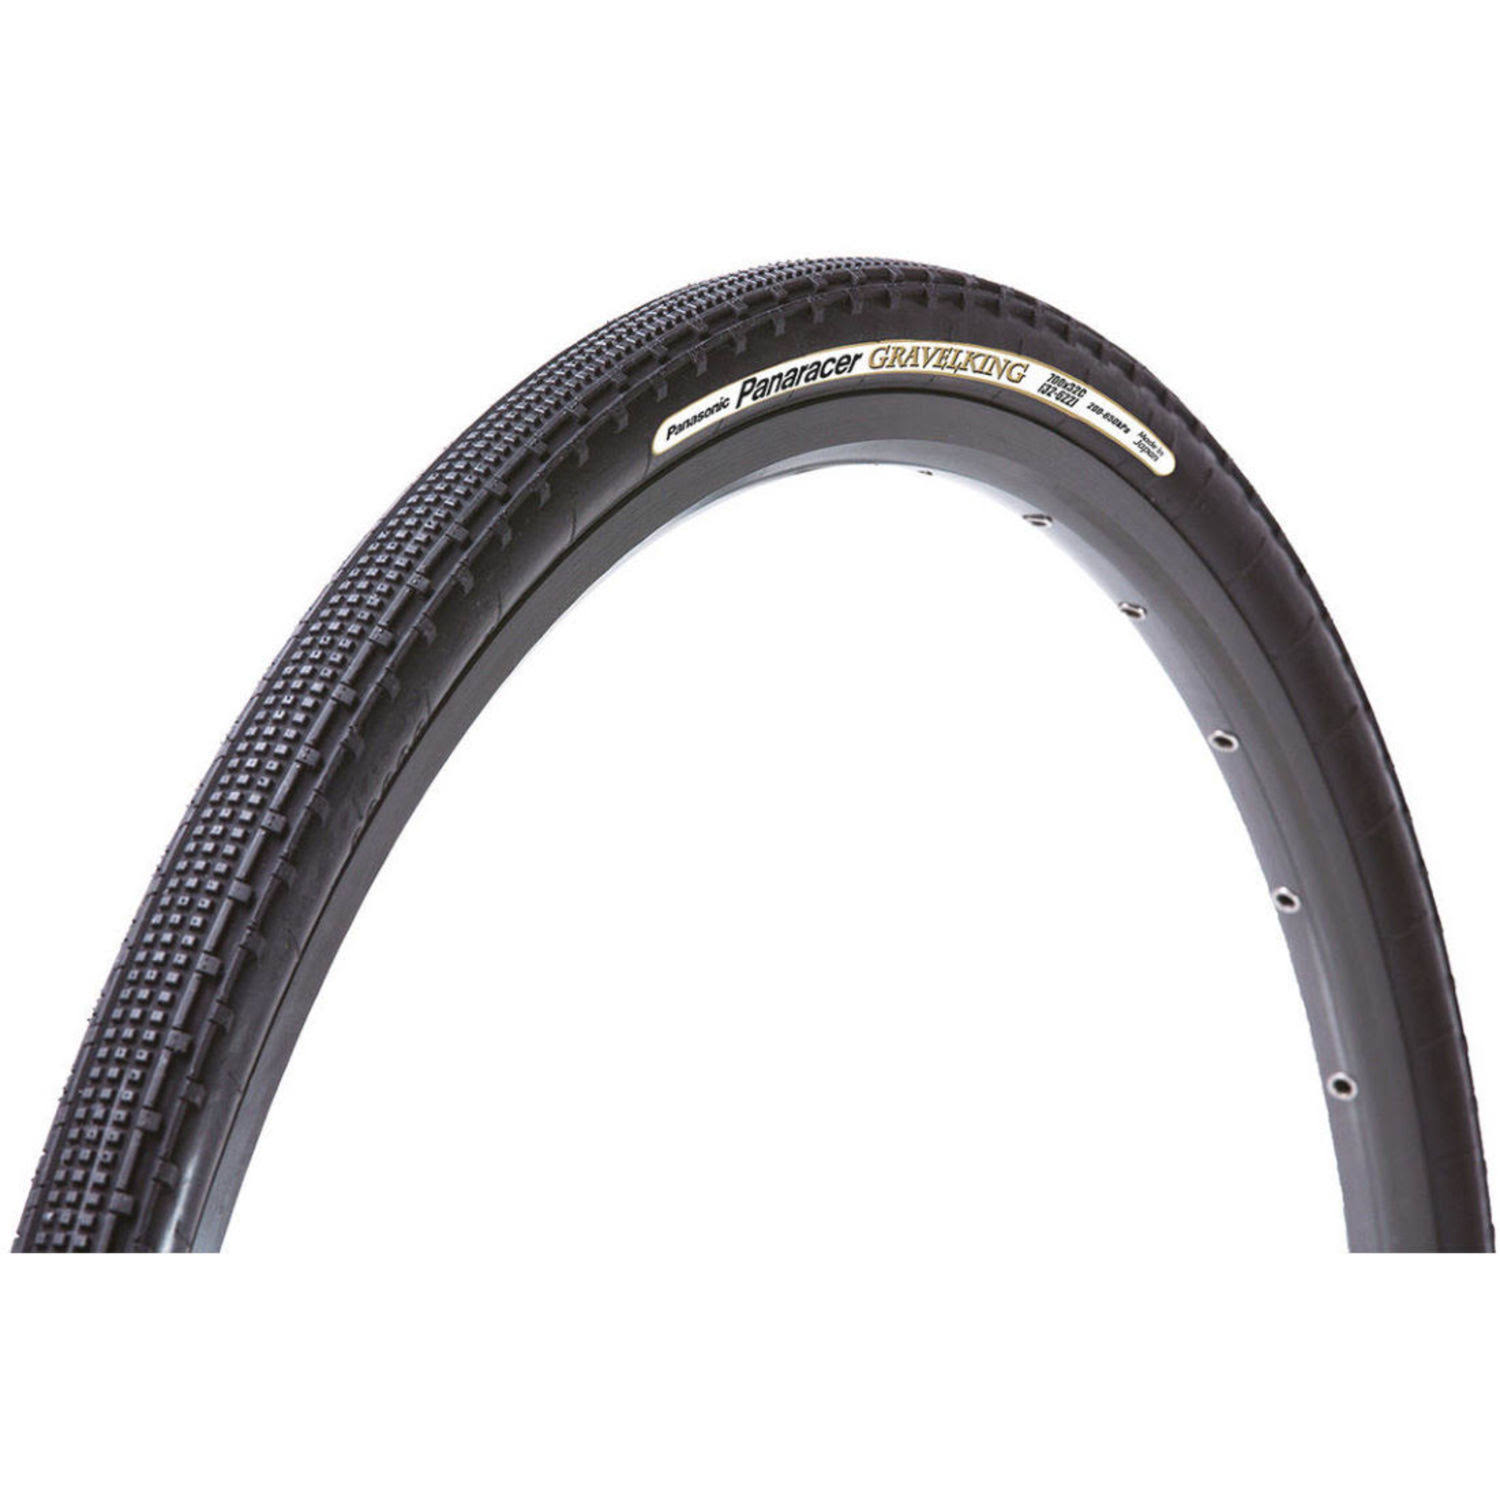 Panaracer Gravel King SK Tire - Black, 700C x 50mm